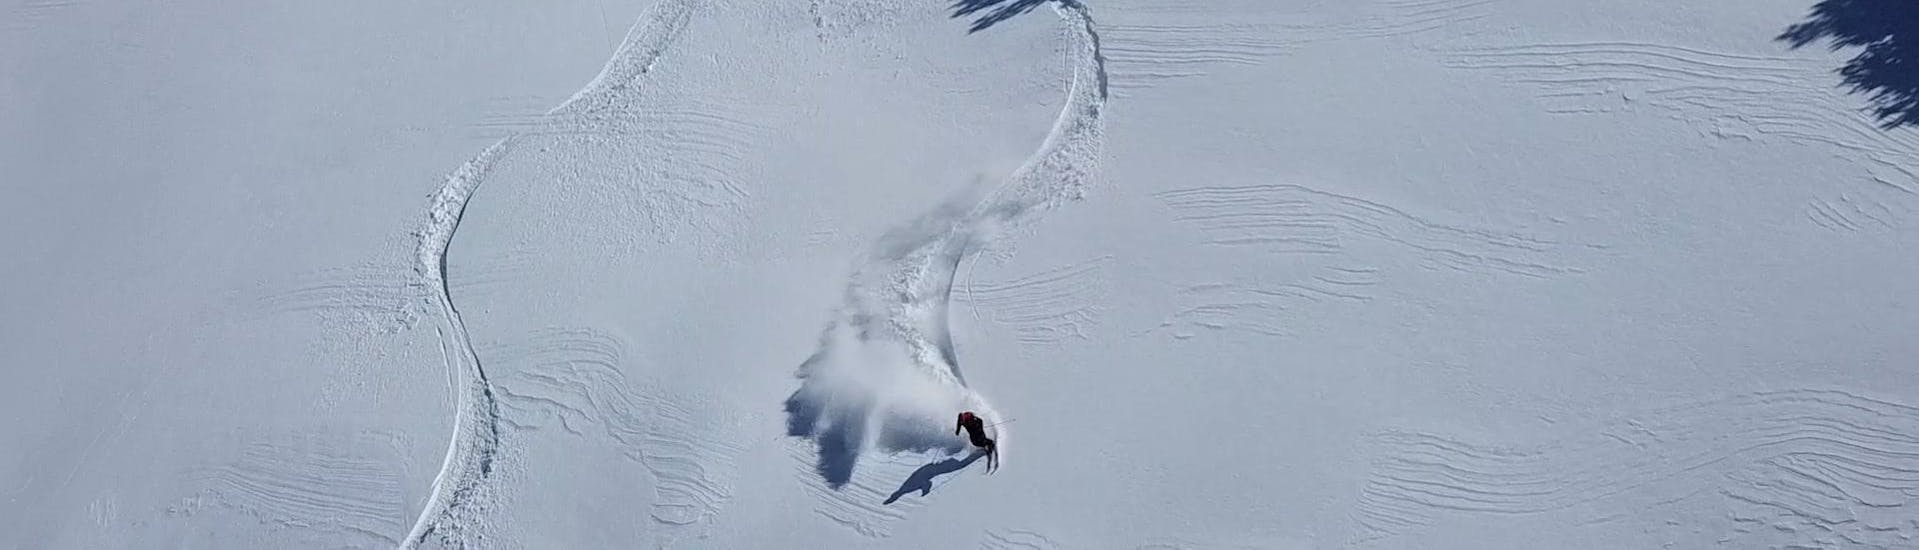 Un esquiador disfruta del paseo por la nieve profunda durante las Clases particulares de Freeride para todos los niveles de la Escuela Ski Cerler.